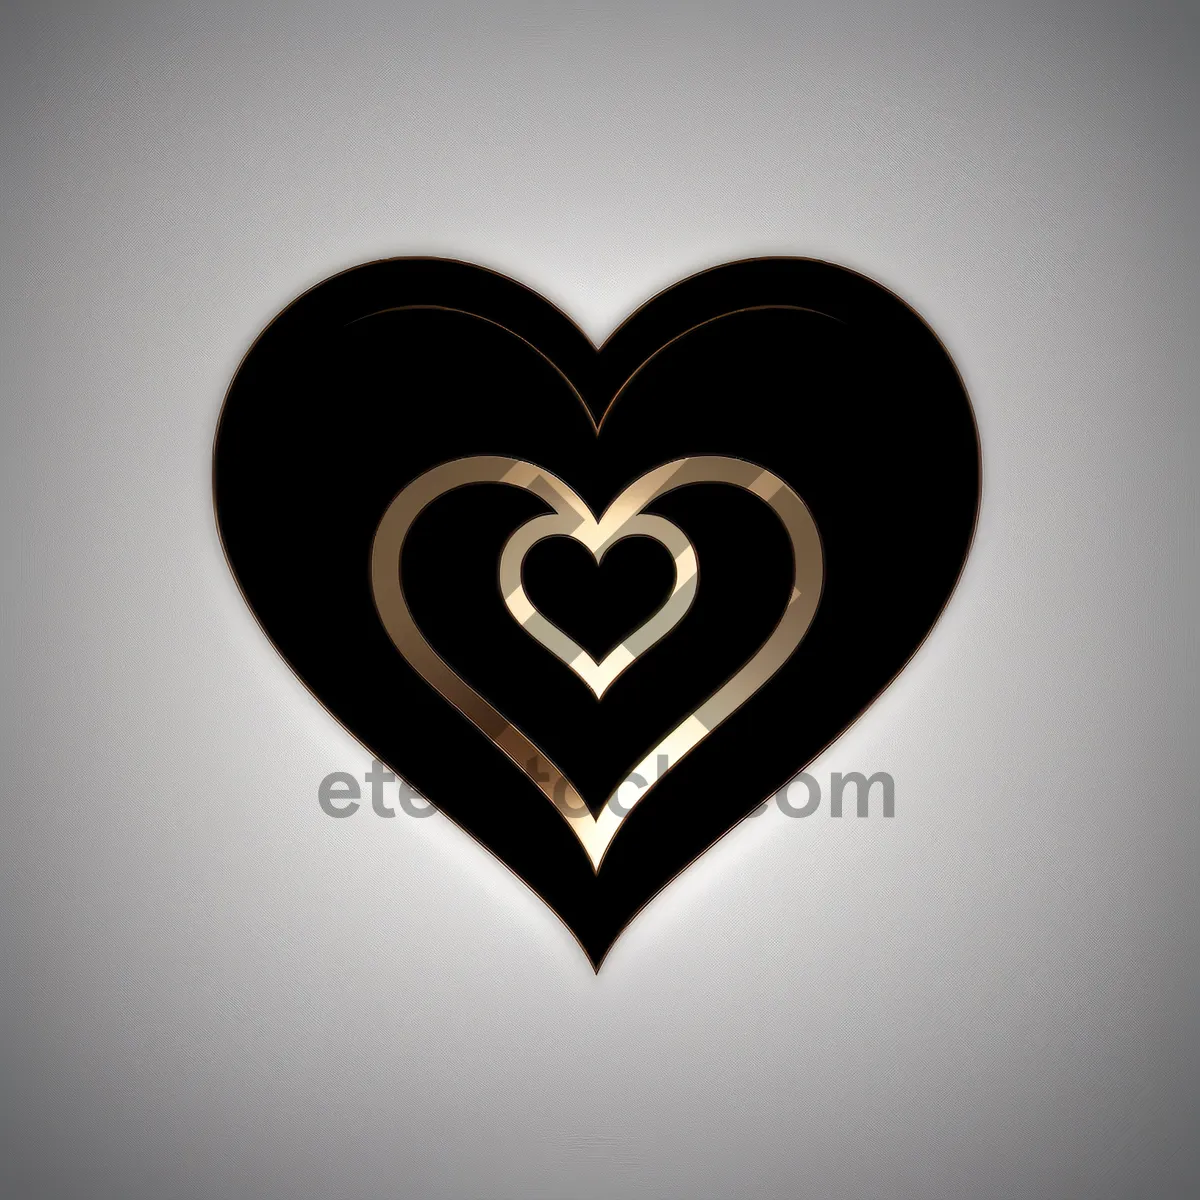 Picture of Romantic Heart Icon - Valentine's Day Graphic Design